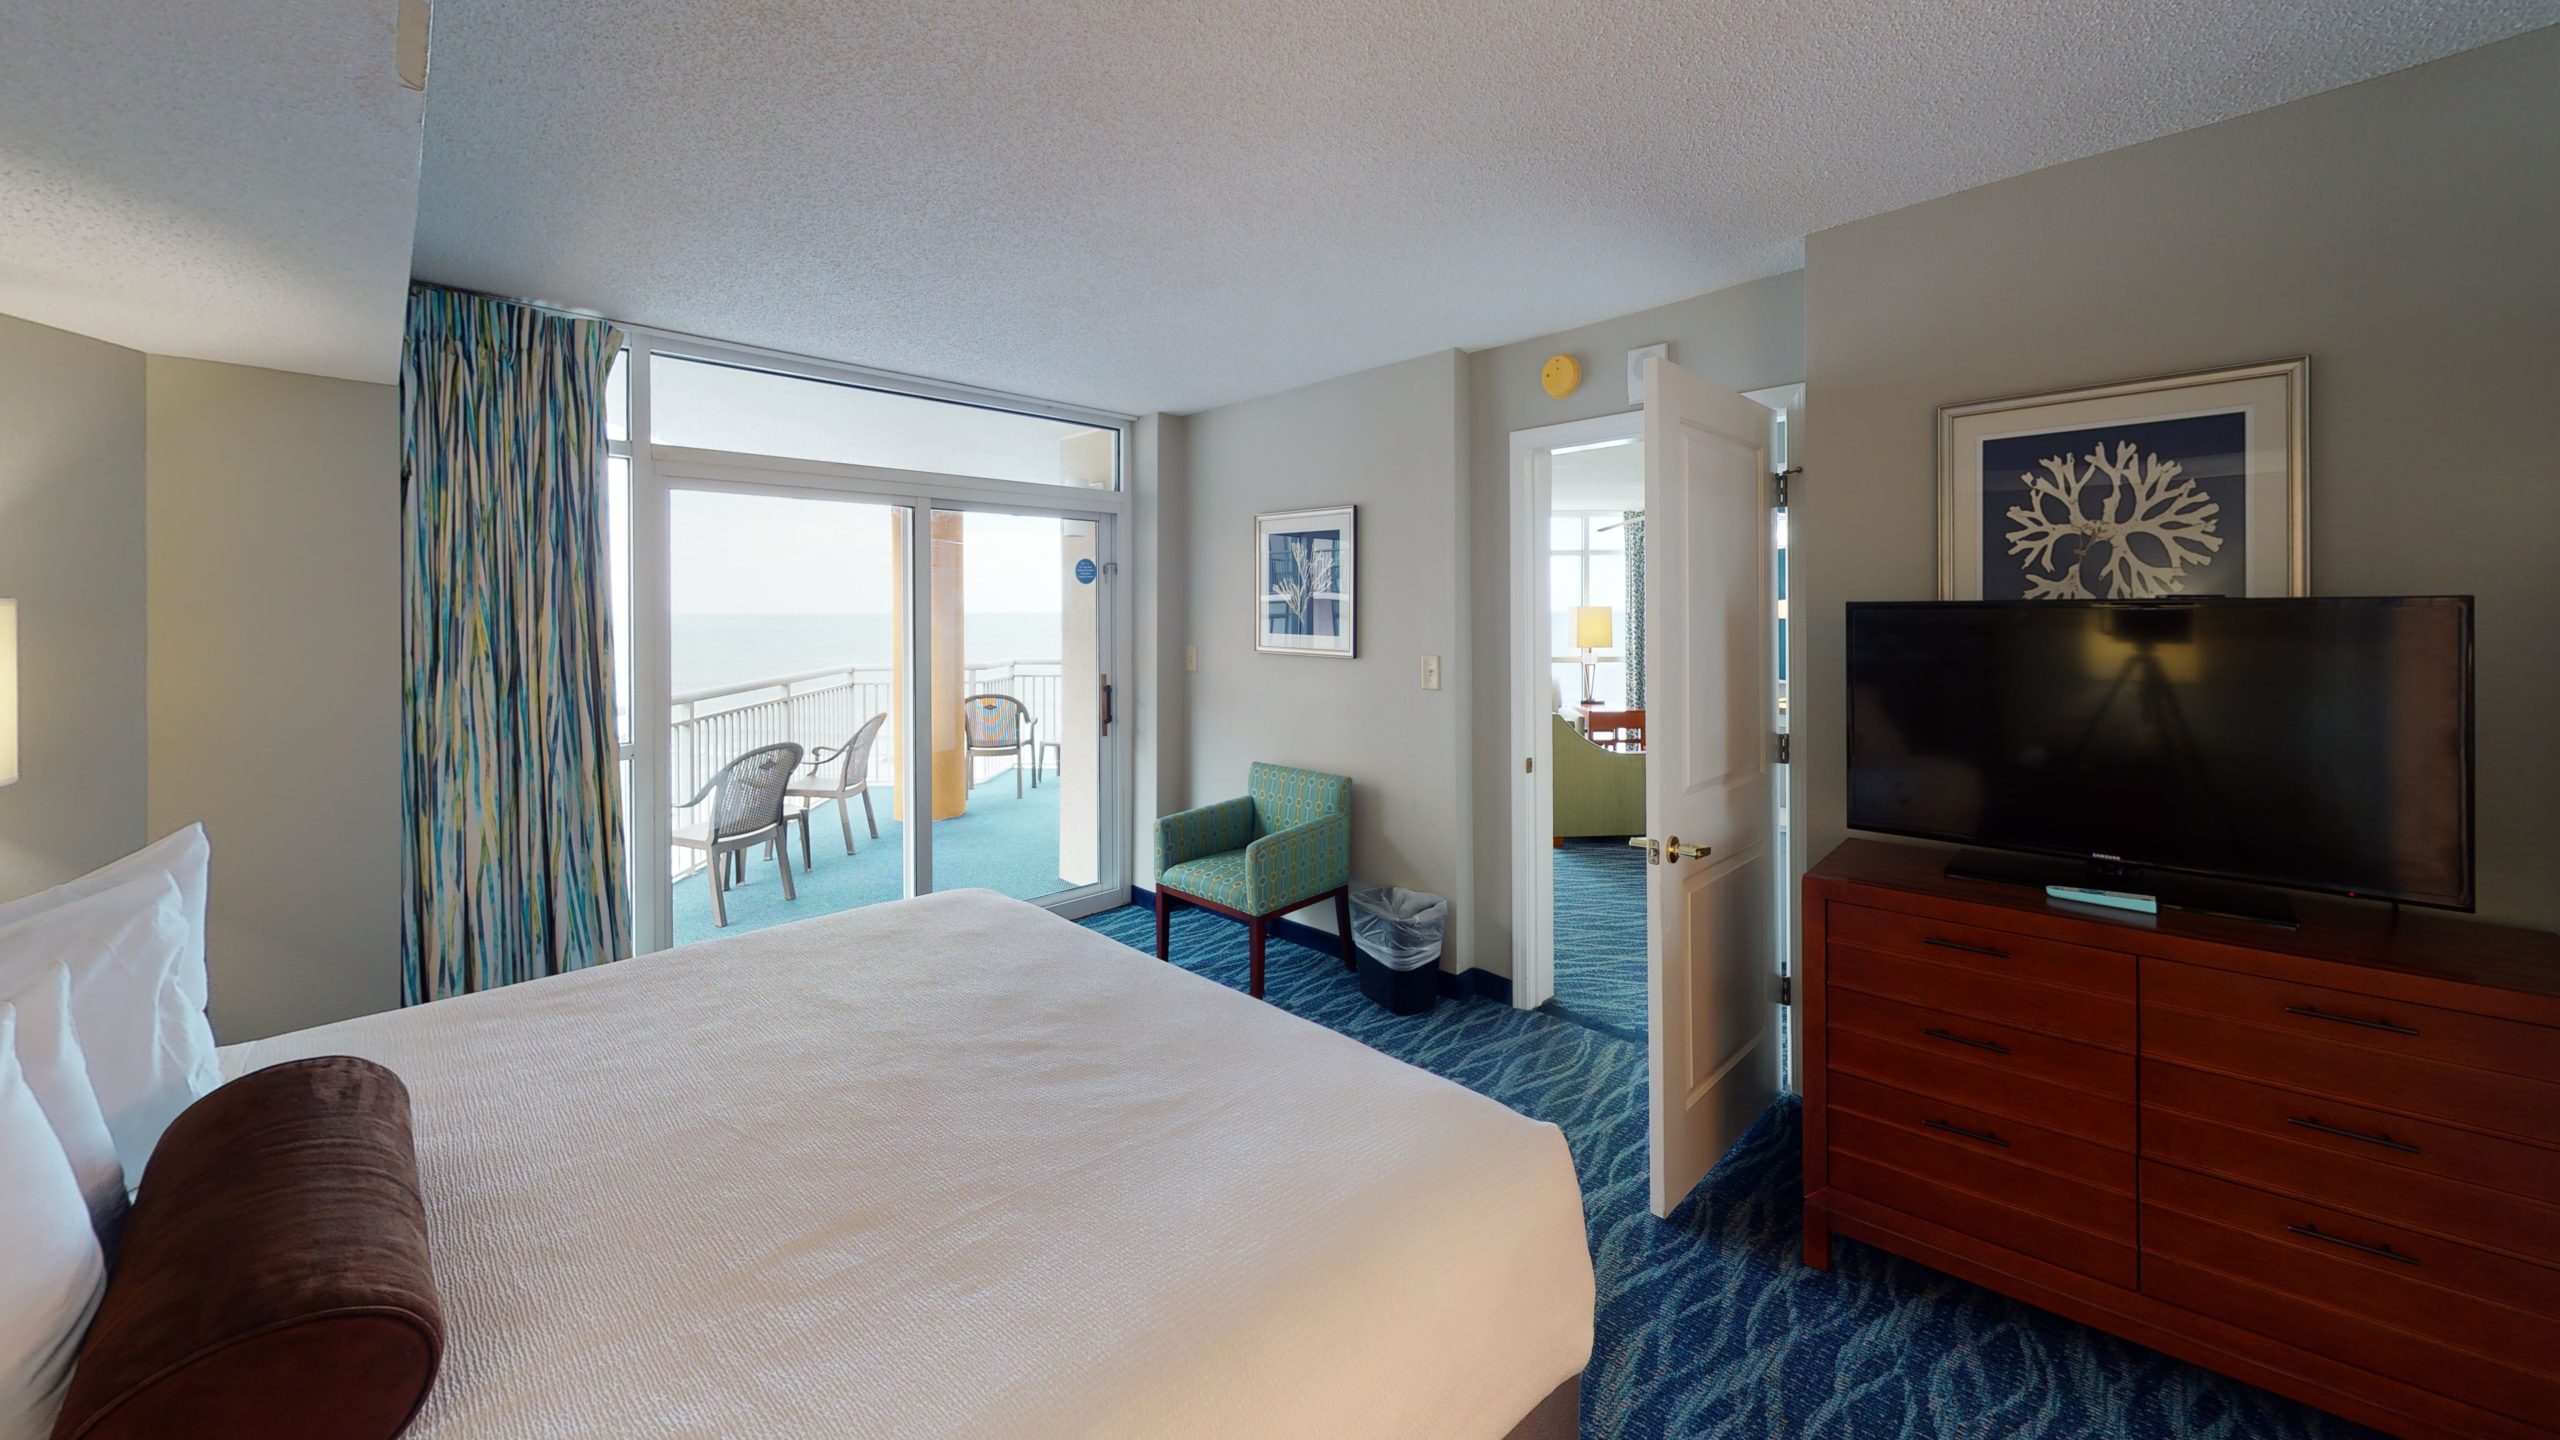 Bedroom suite at Dunes Village Resort in Myrtle Beach.